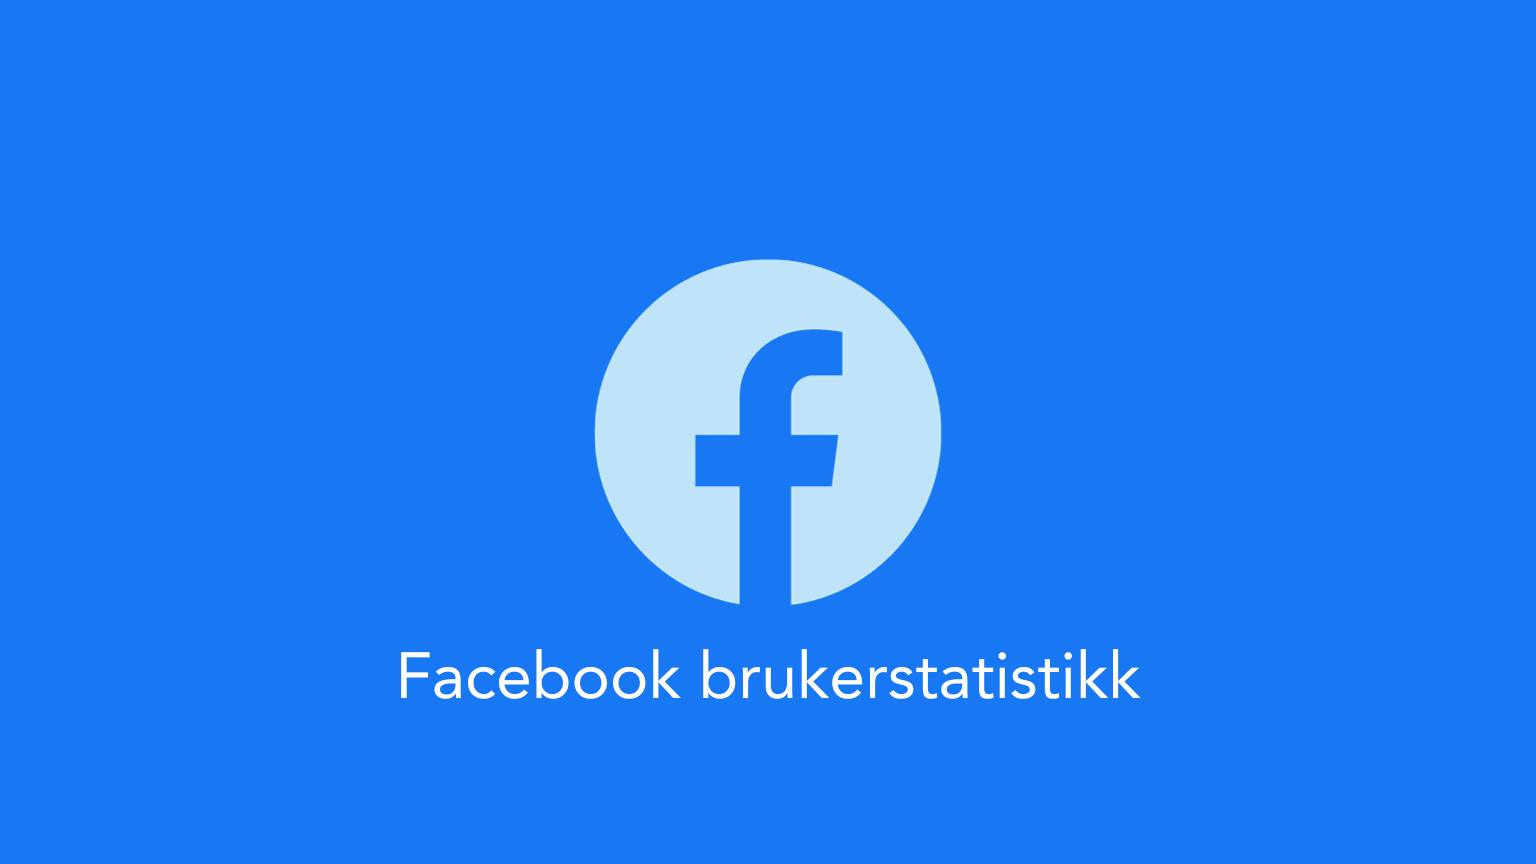 Facebook statistikk Brukere i Norge